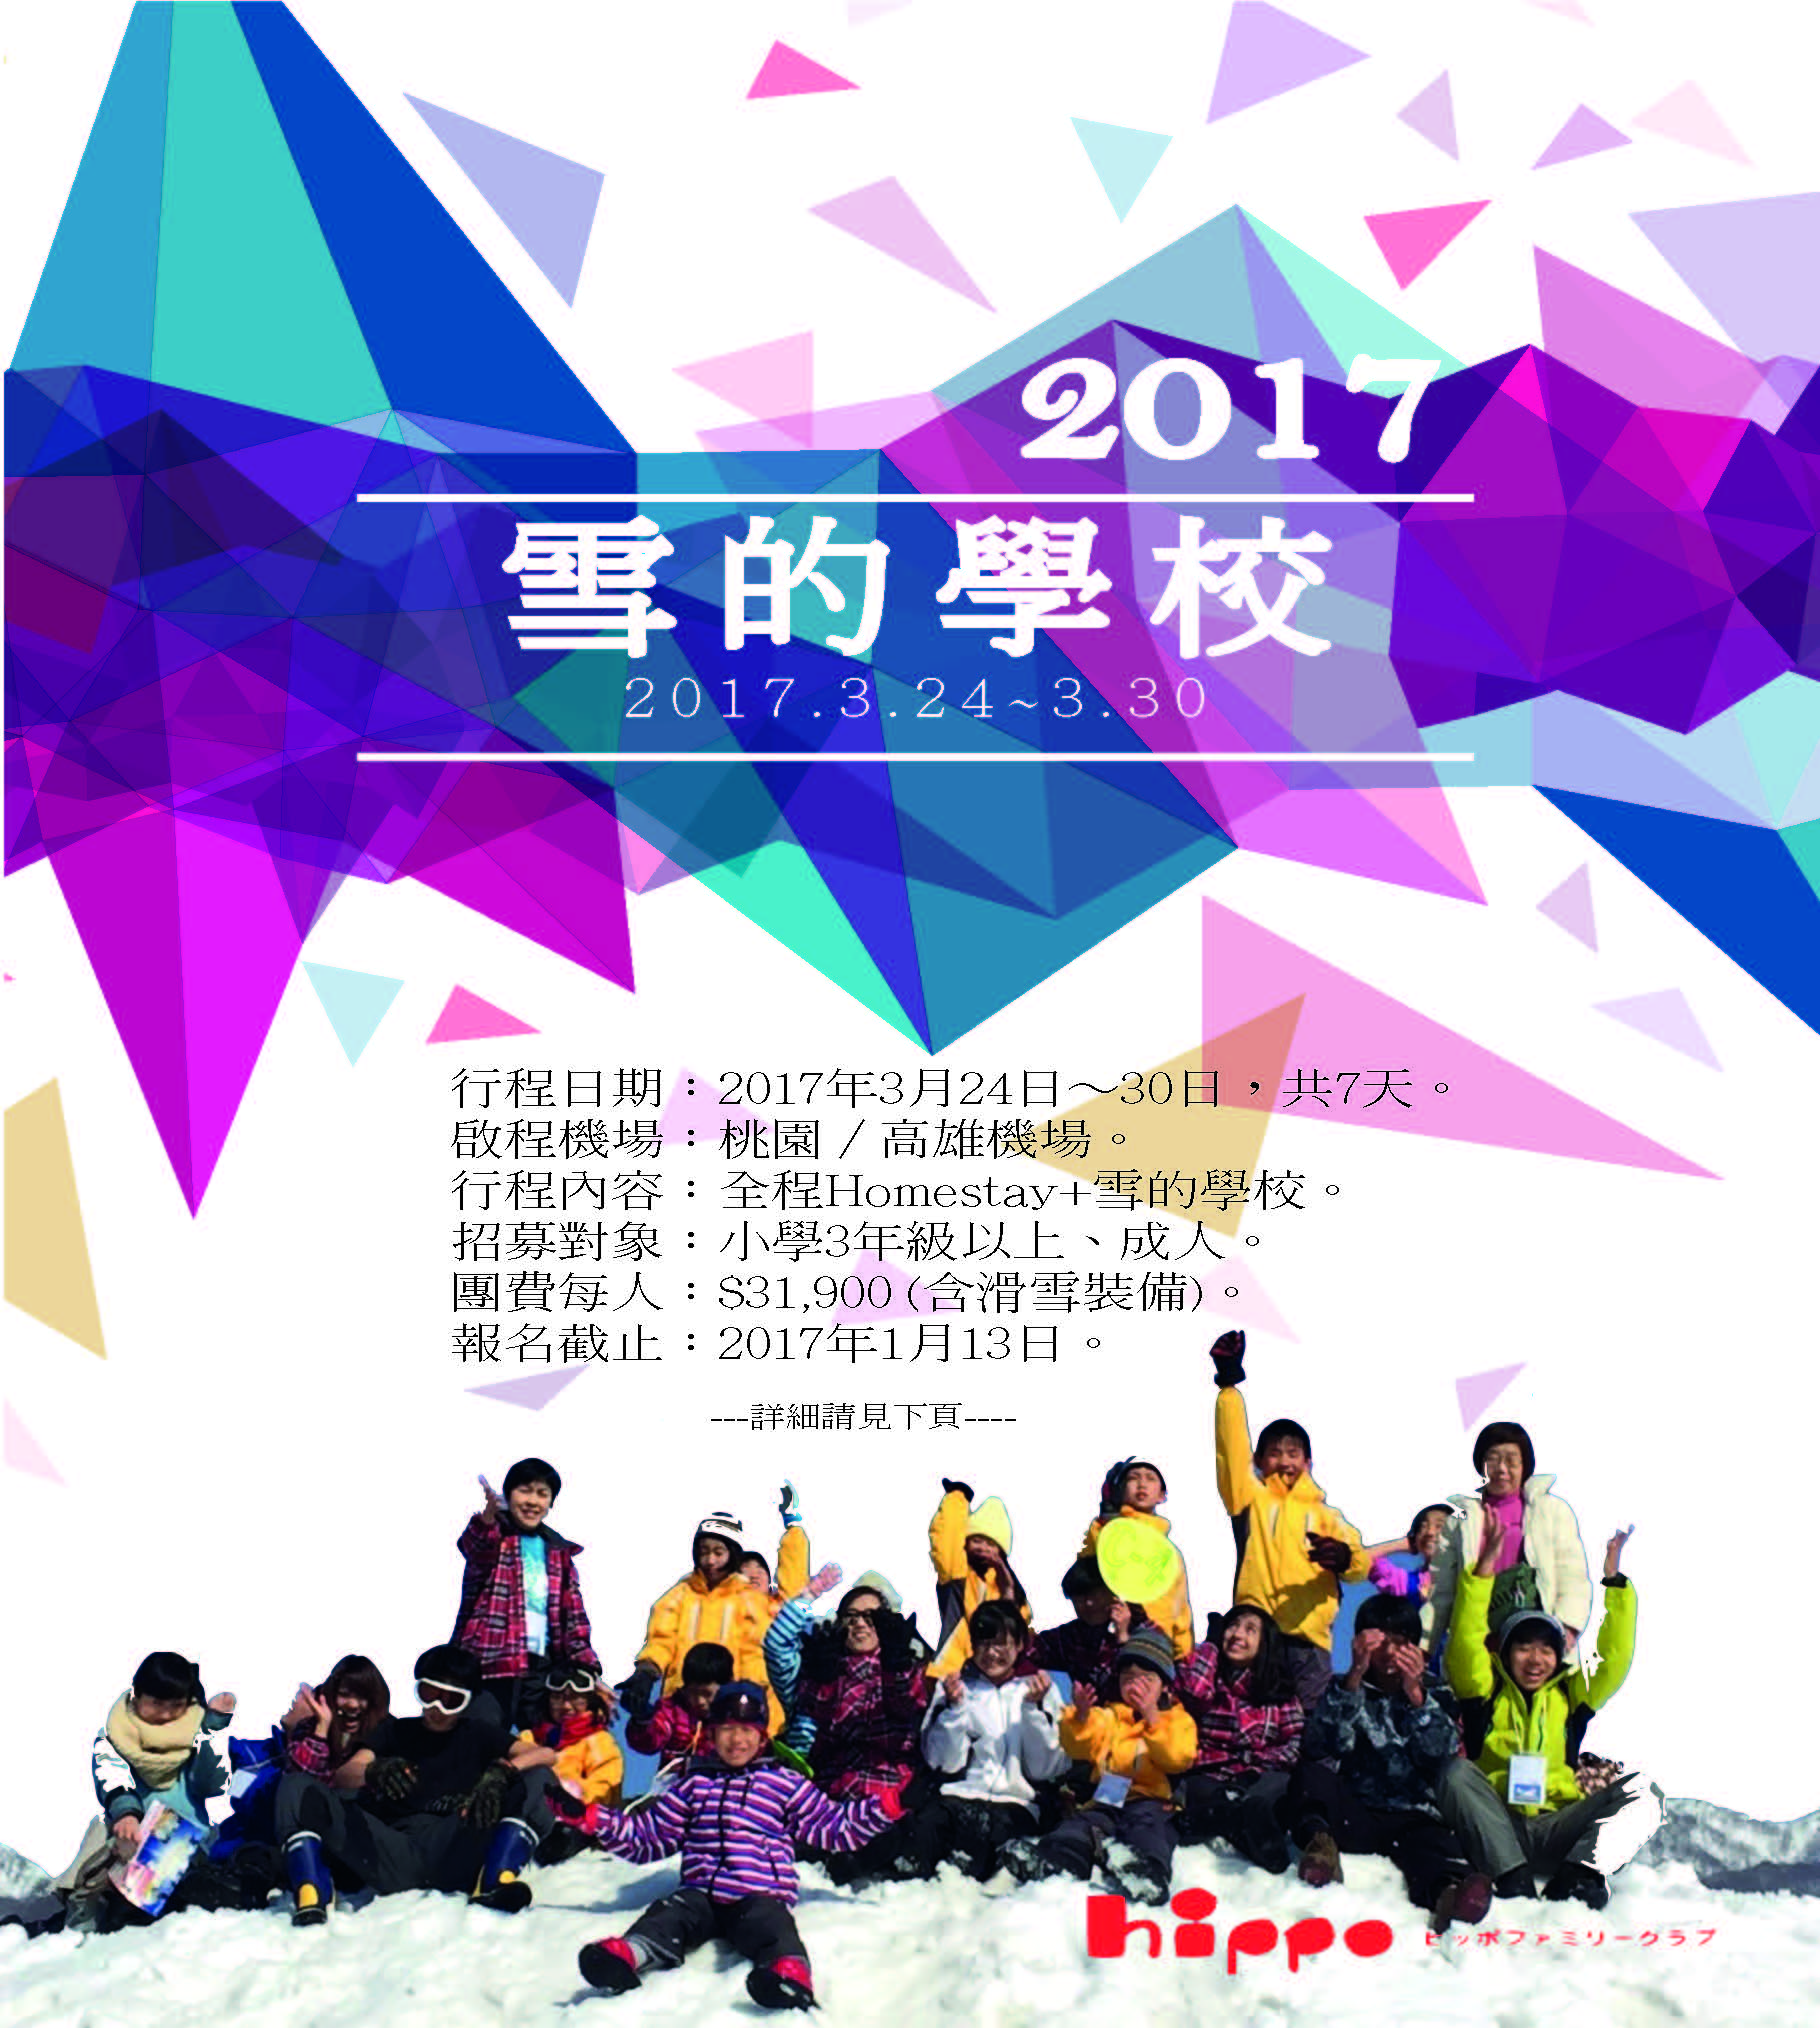 2017 全球最大Snow Camp in 長野飯山 {募集中}